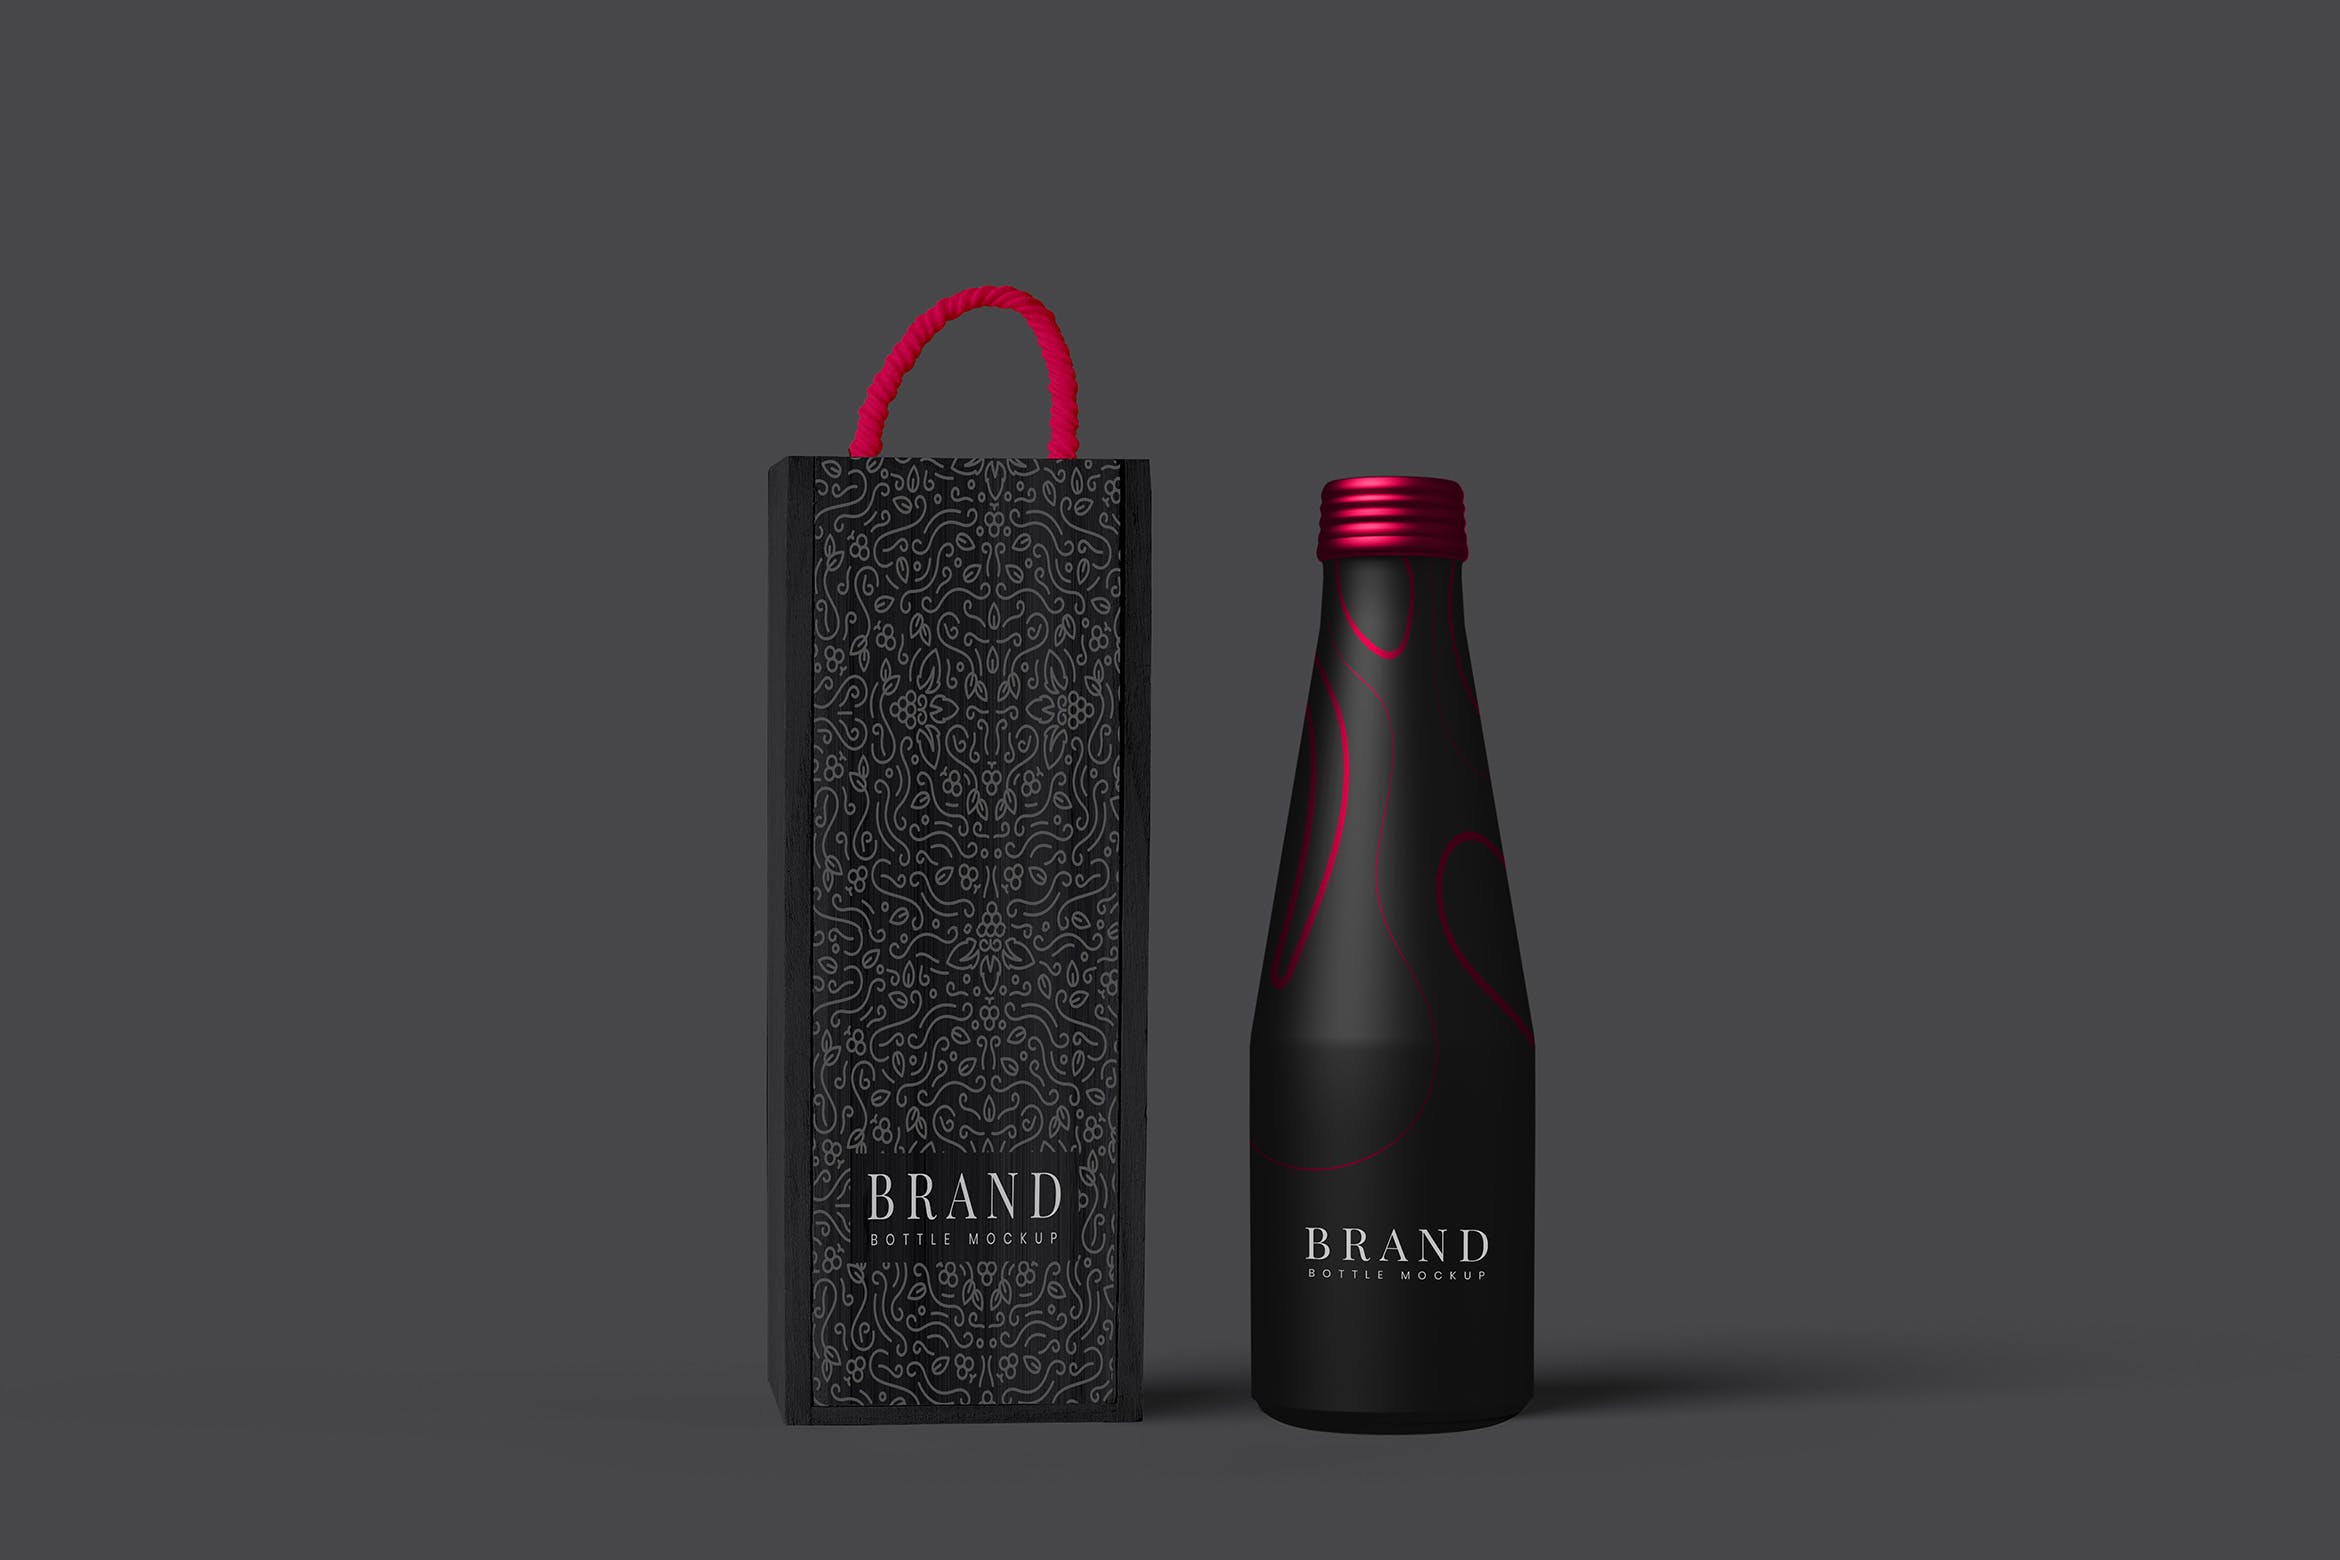 金属饮料瓶包装设计样机模板 Metal Bottle Package Mockup插图